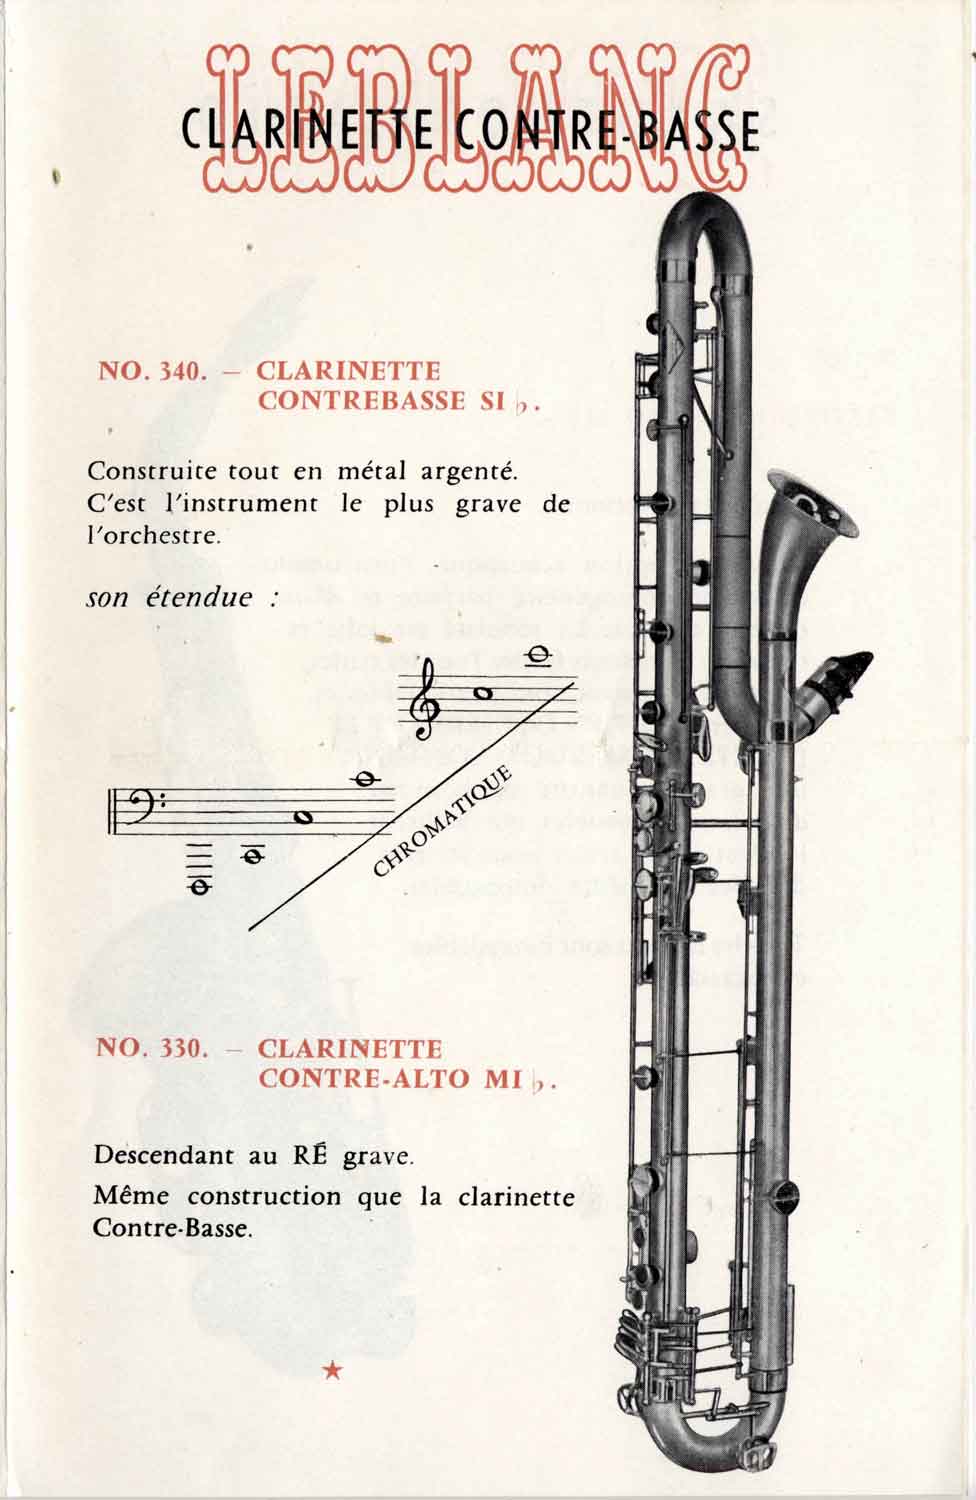 Valentin cases : affiche Leblanc présentant la clarinette contrebasse.